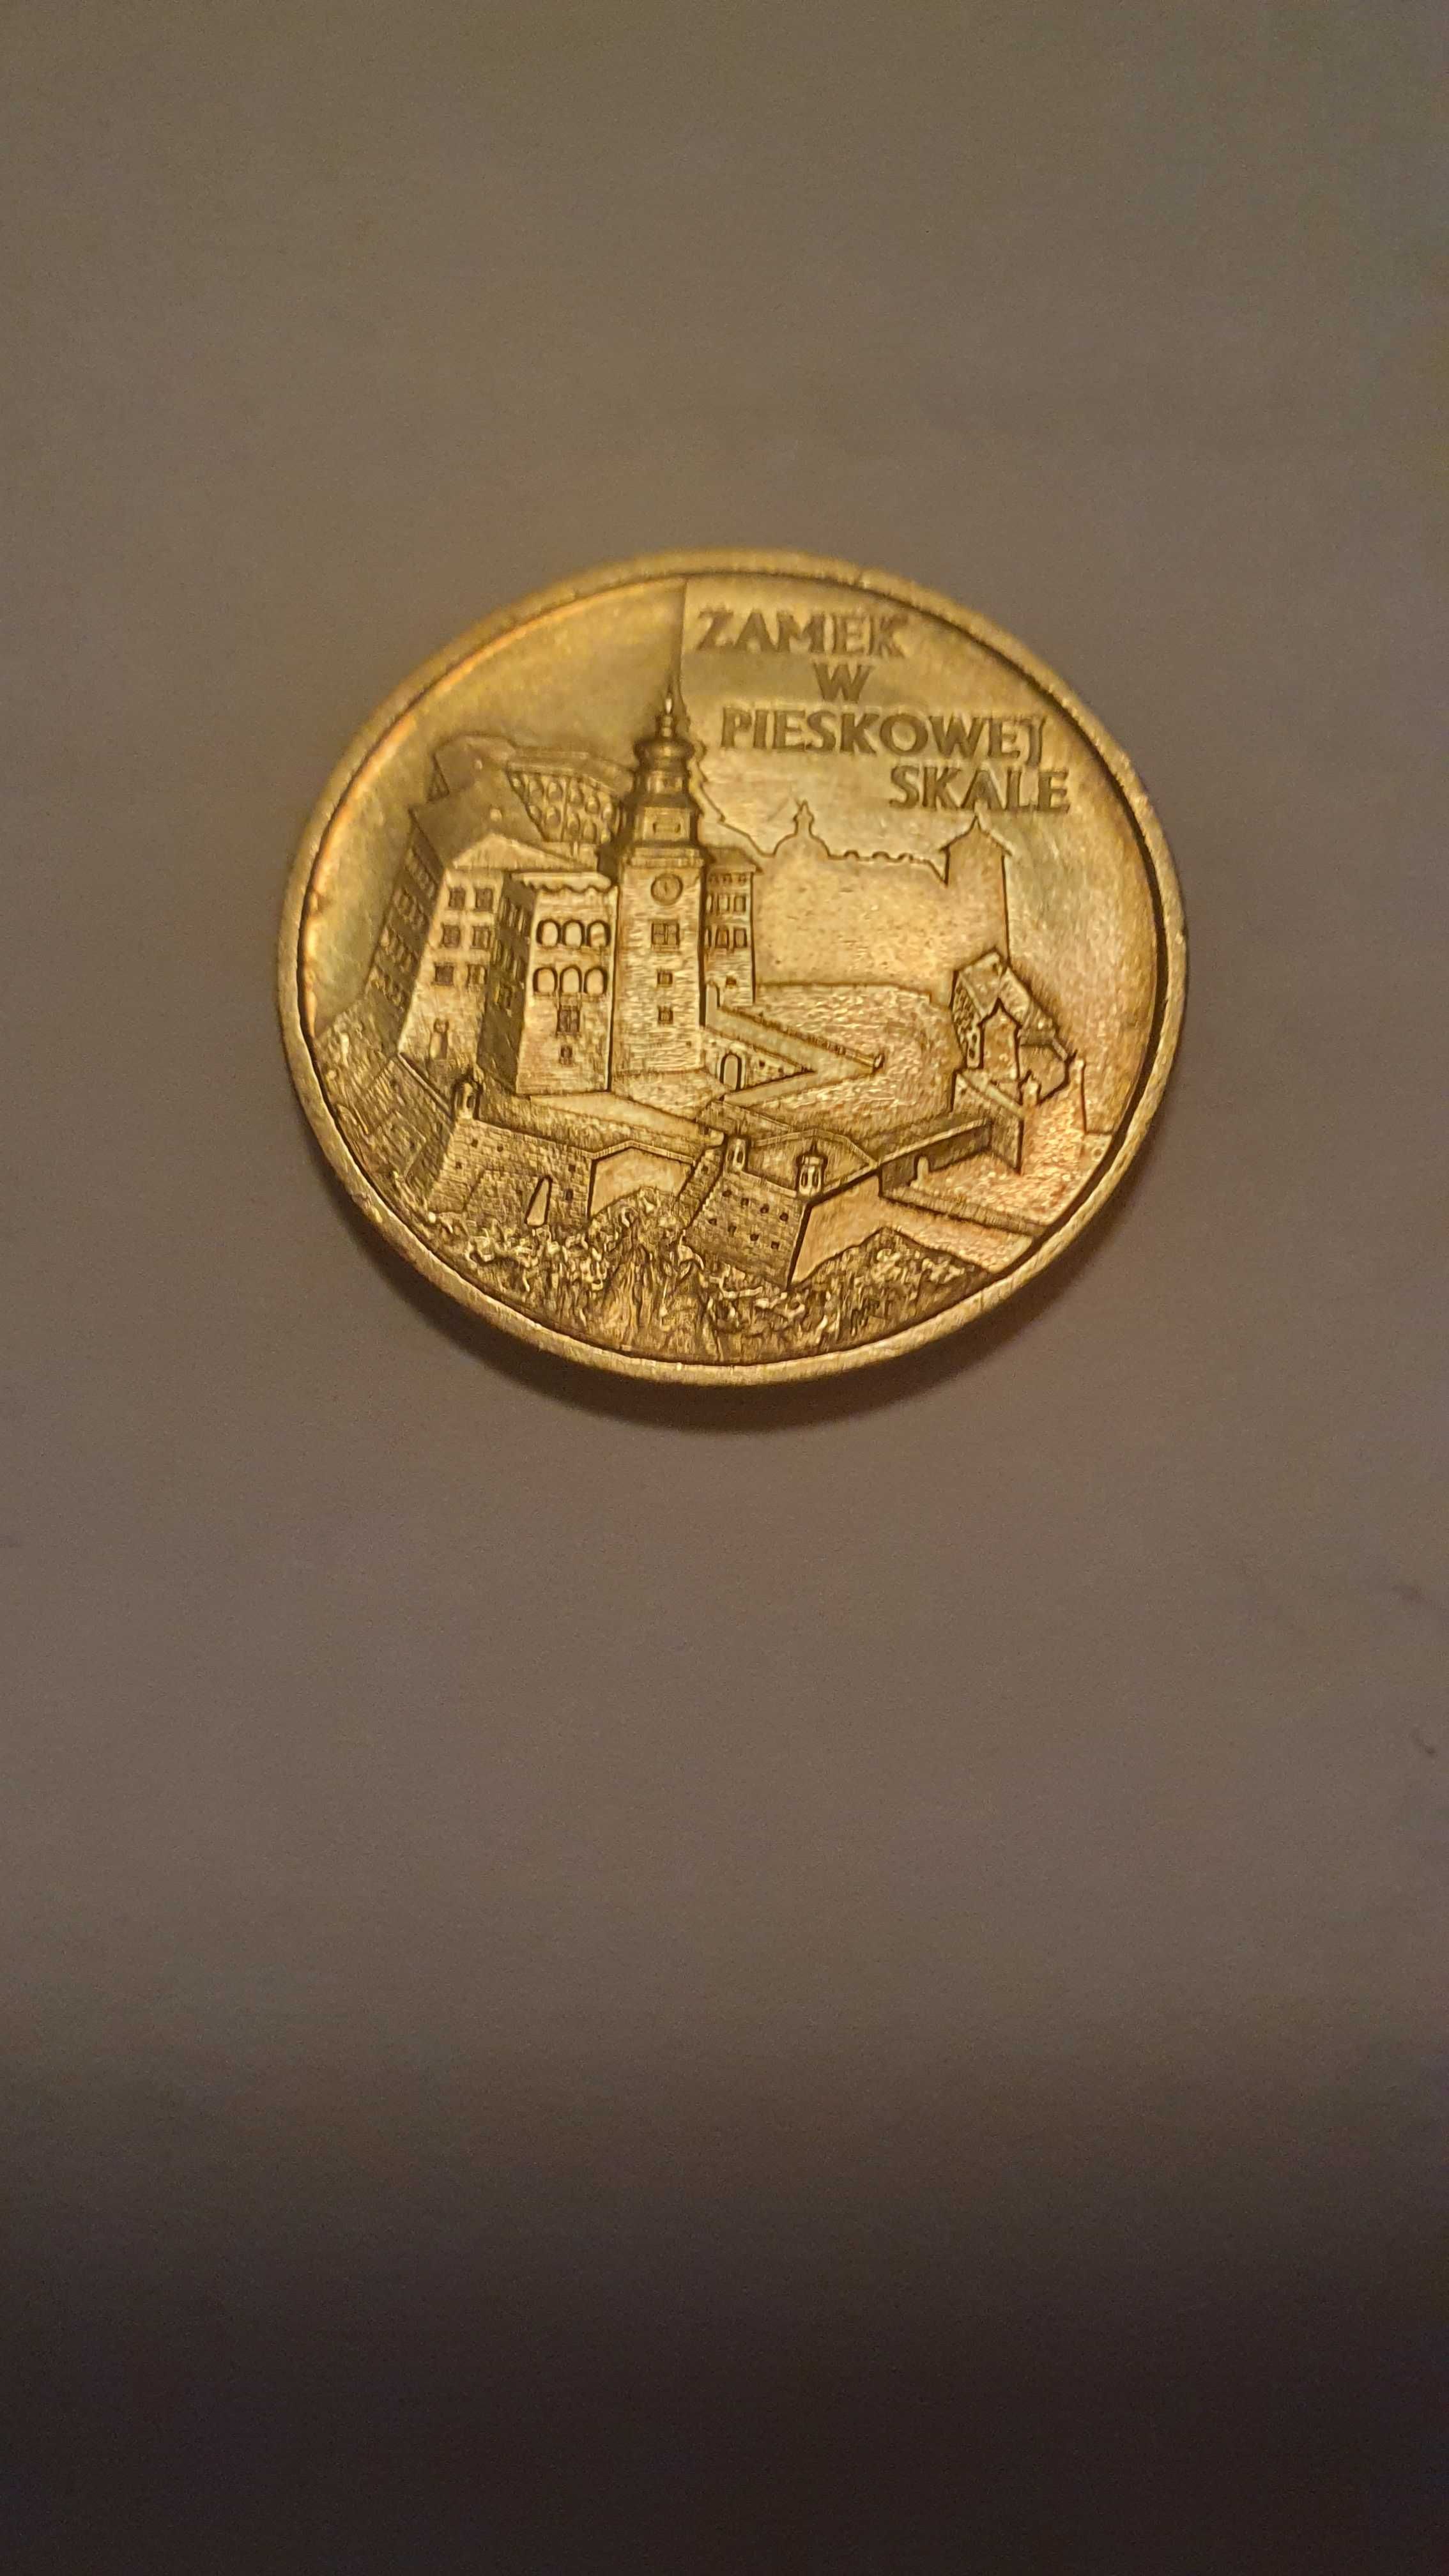 Moneta 2 zł Zamek w Pieskowej Skale